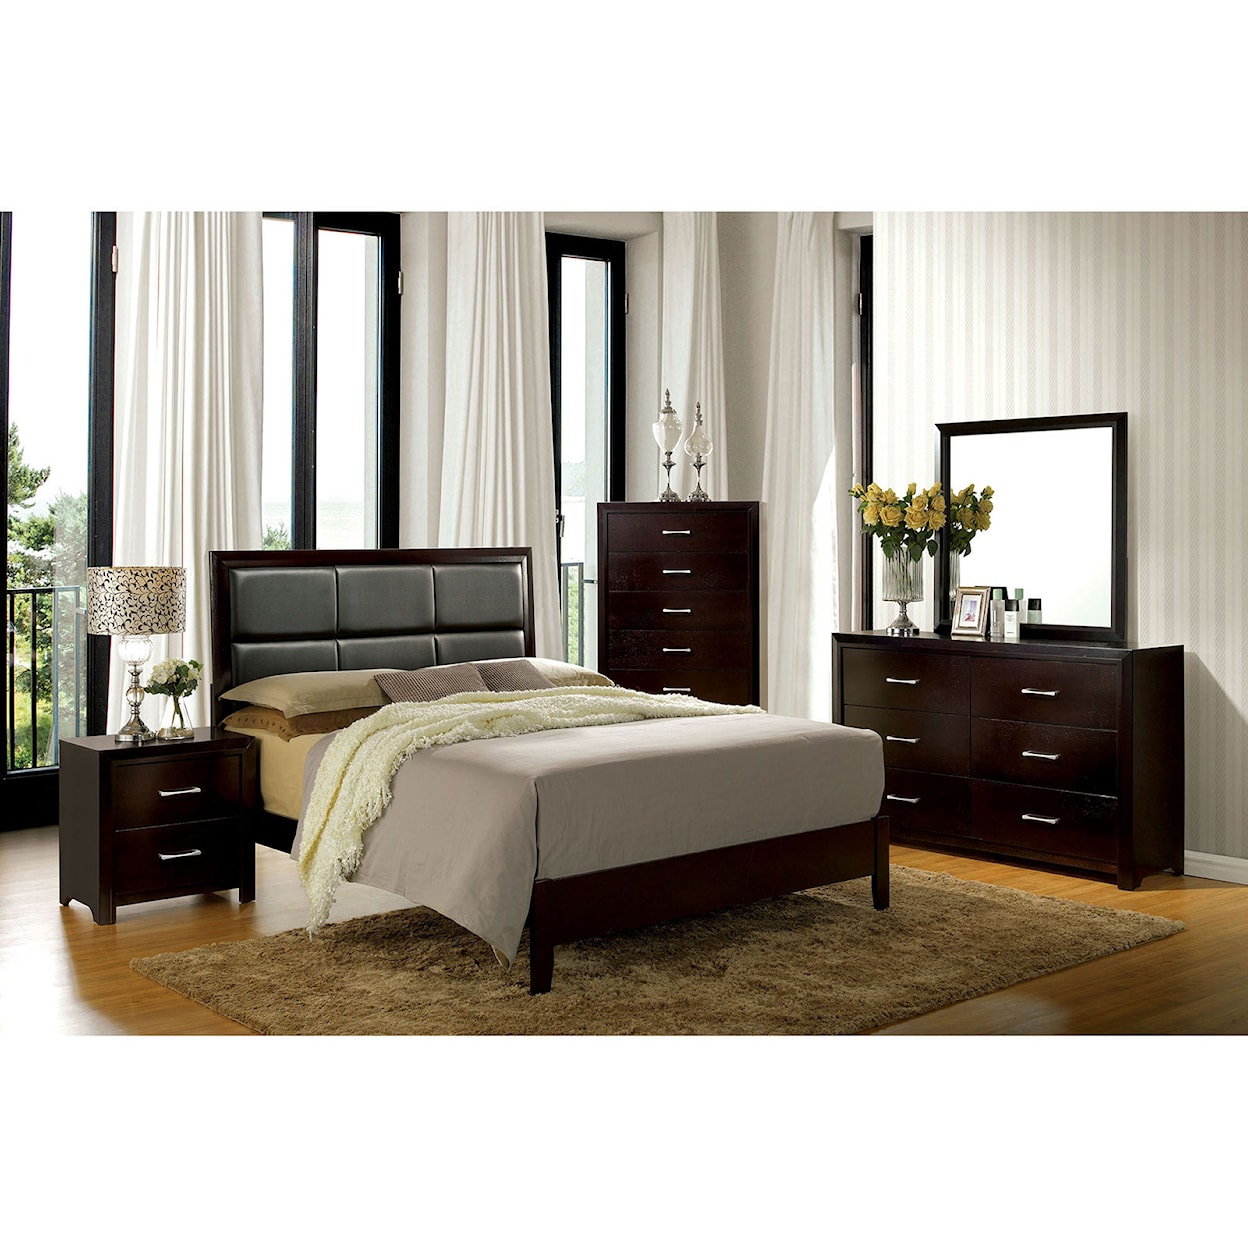 Furniture of America Janine 5-Piece Queen Bedroom Set